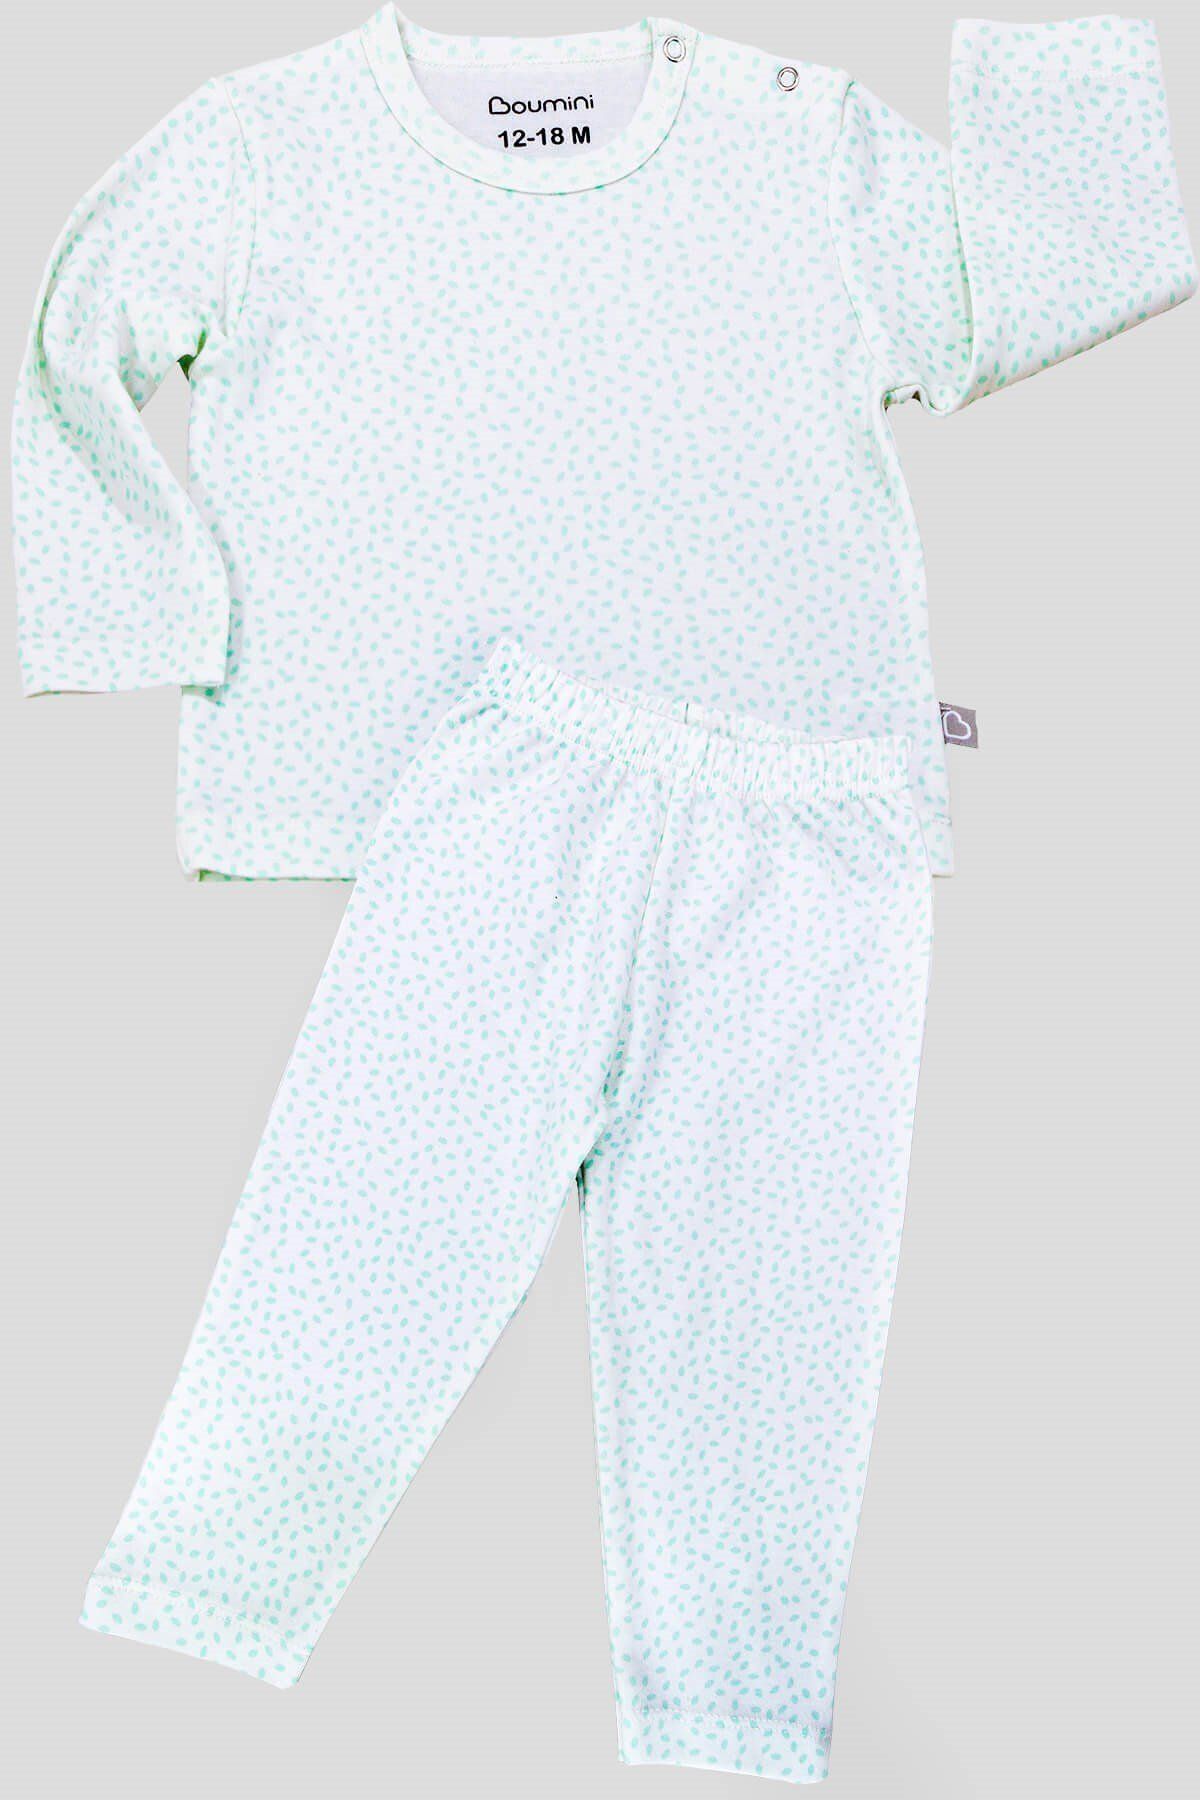 Boumini Bebek Ve Çocuk Pijama Takımı Yapraklar Mint